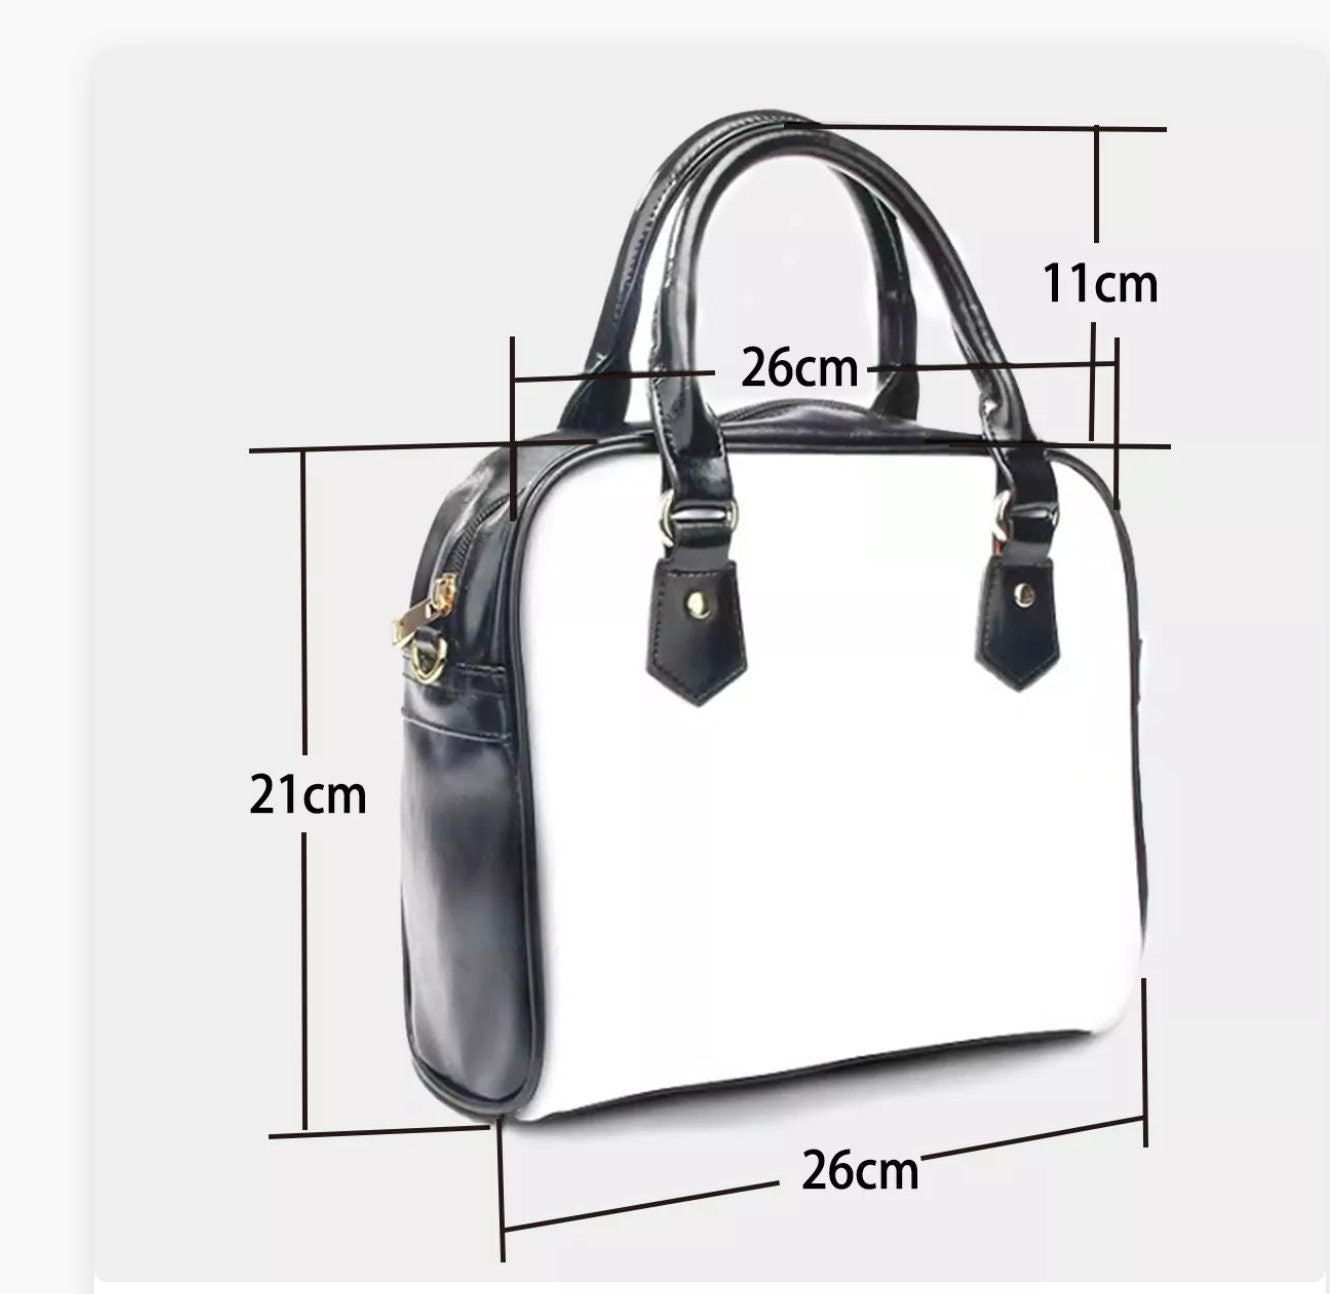 Schwarze Karo-Geldbörse, Karo-Handtasche, Damenhandtasche, Damen-Geldbörse, Retro-Handtasche, schwarz-weiße Handtasche, schicke schwarze Handtasche, schwarze Handtasche